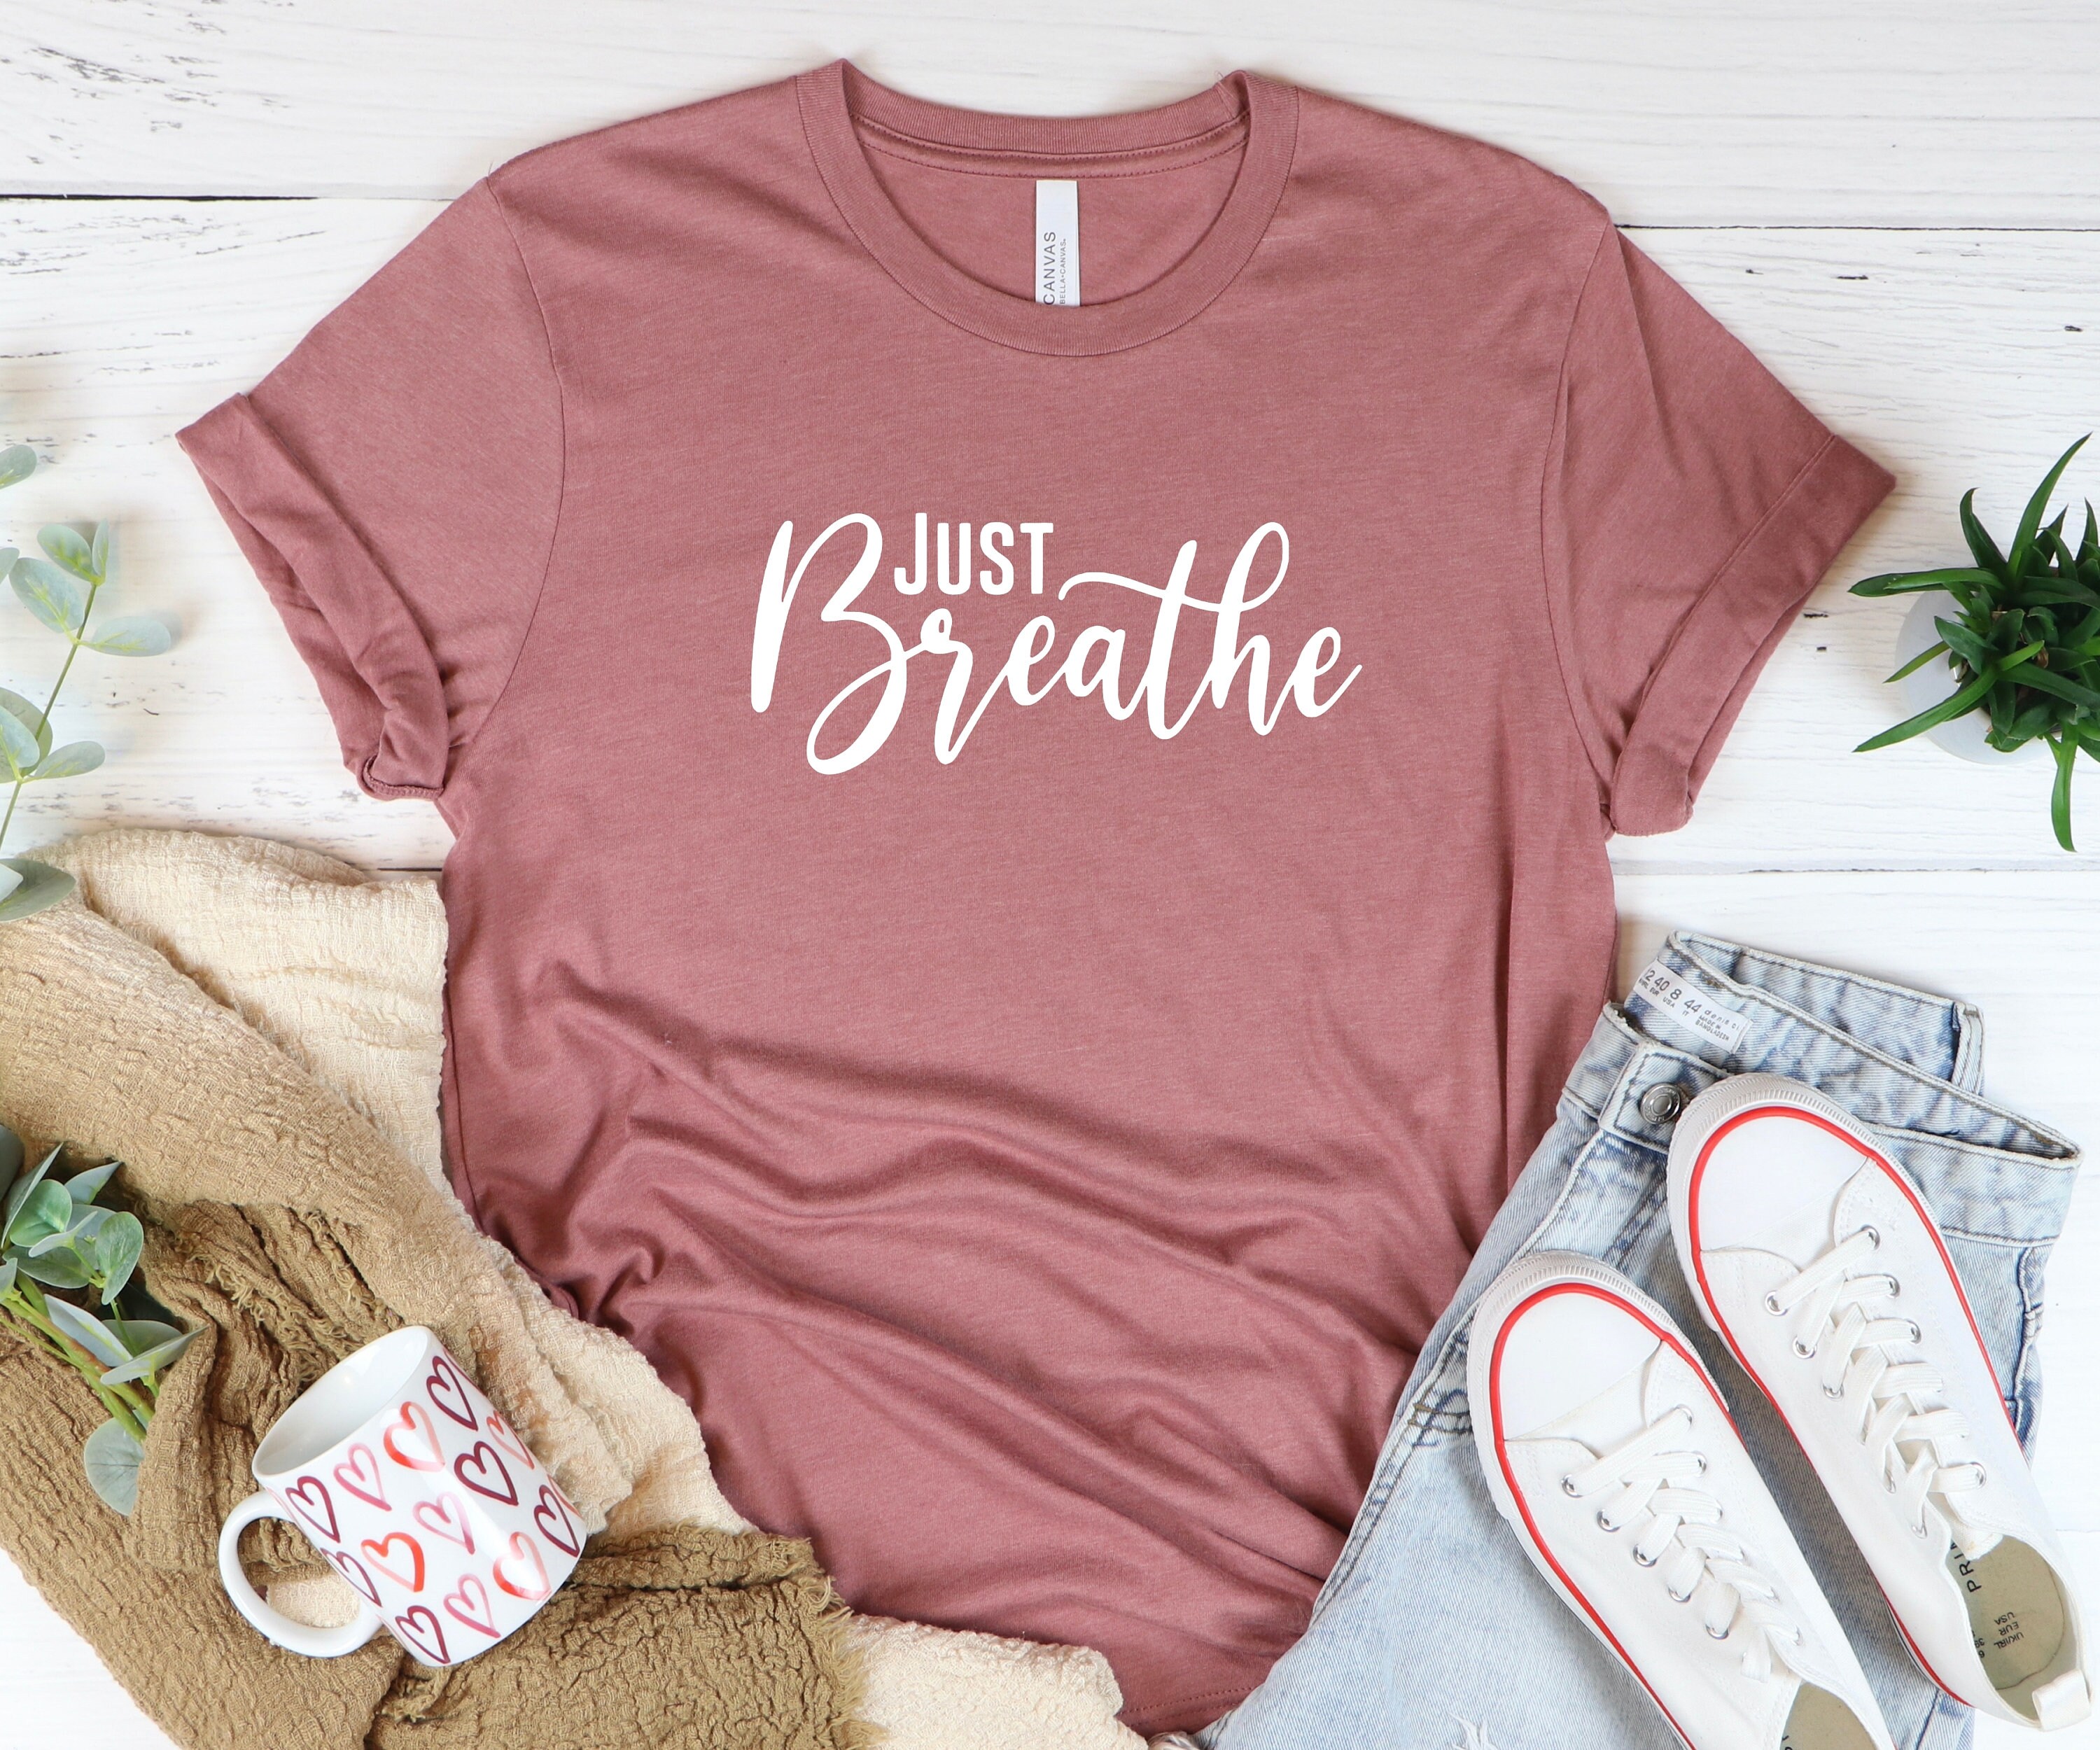 Just Breathe Shirt Dandelion Shirt Meditation Shirt Yoga - Etsy